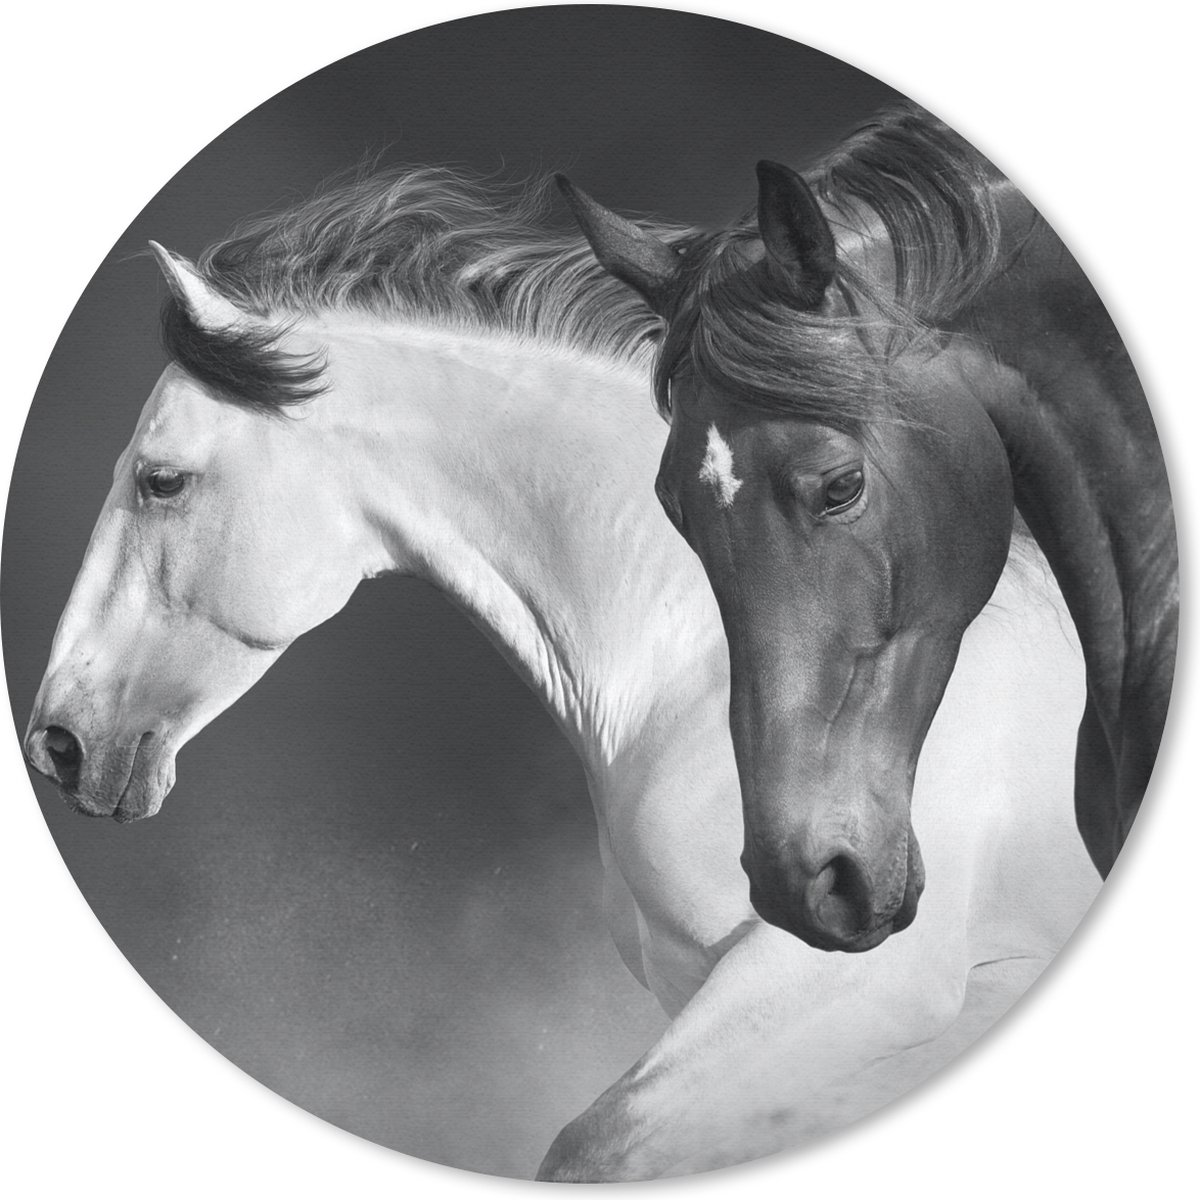 Muismat - Mousepad - Rond - Paarden - Dieren - Zwart - Wit - Portret - 40x40 cm - Ronde muismat